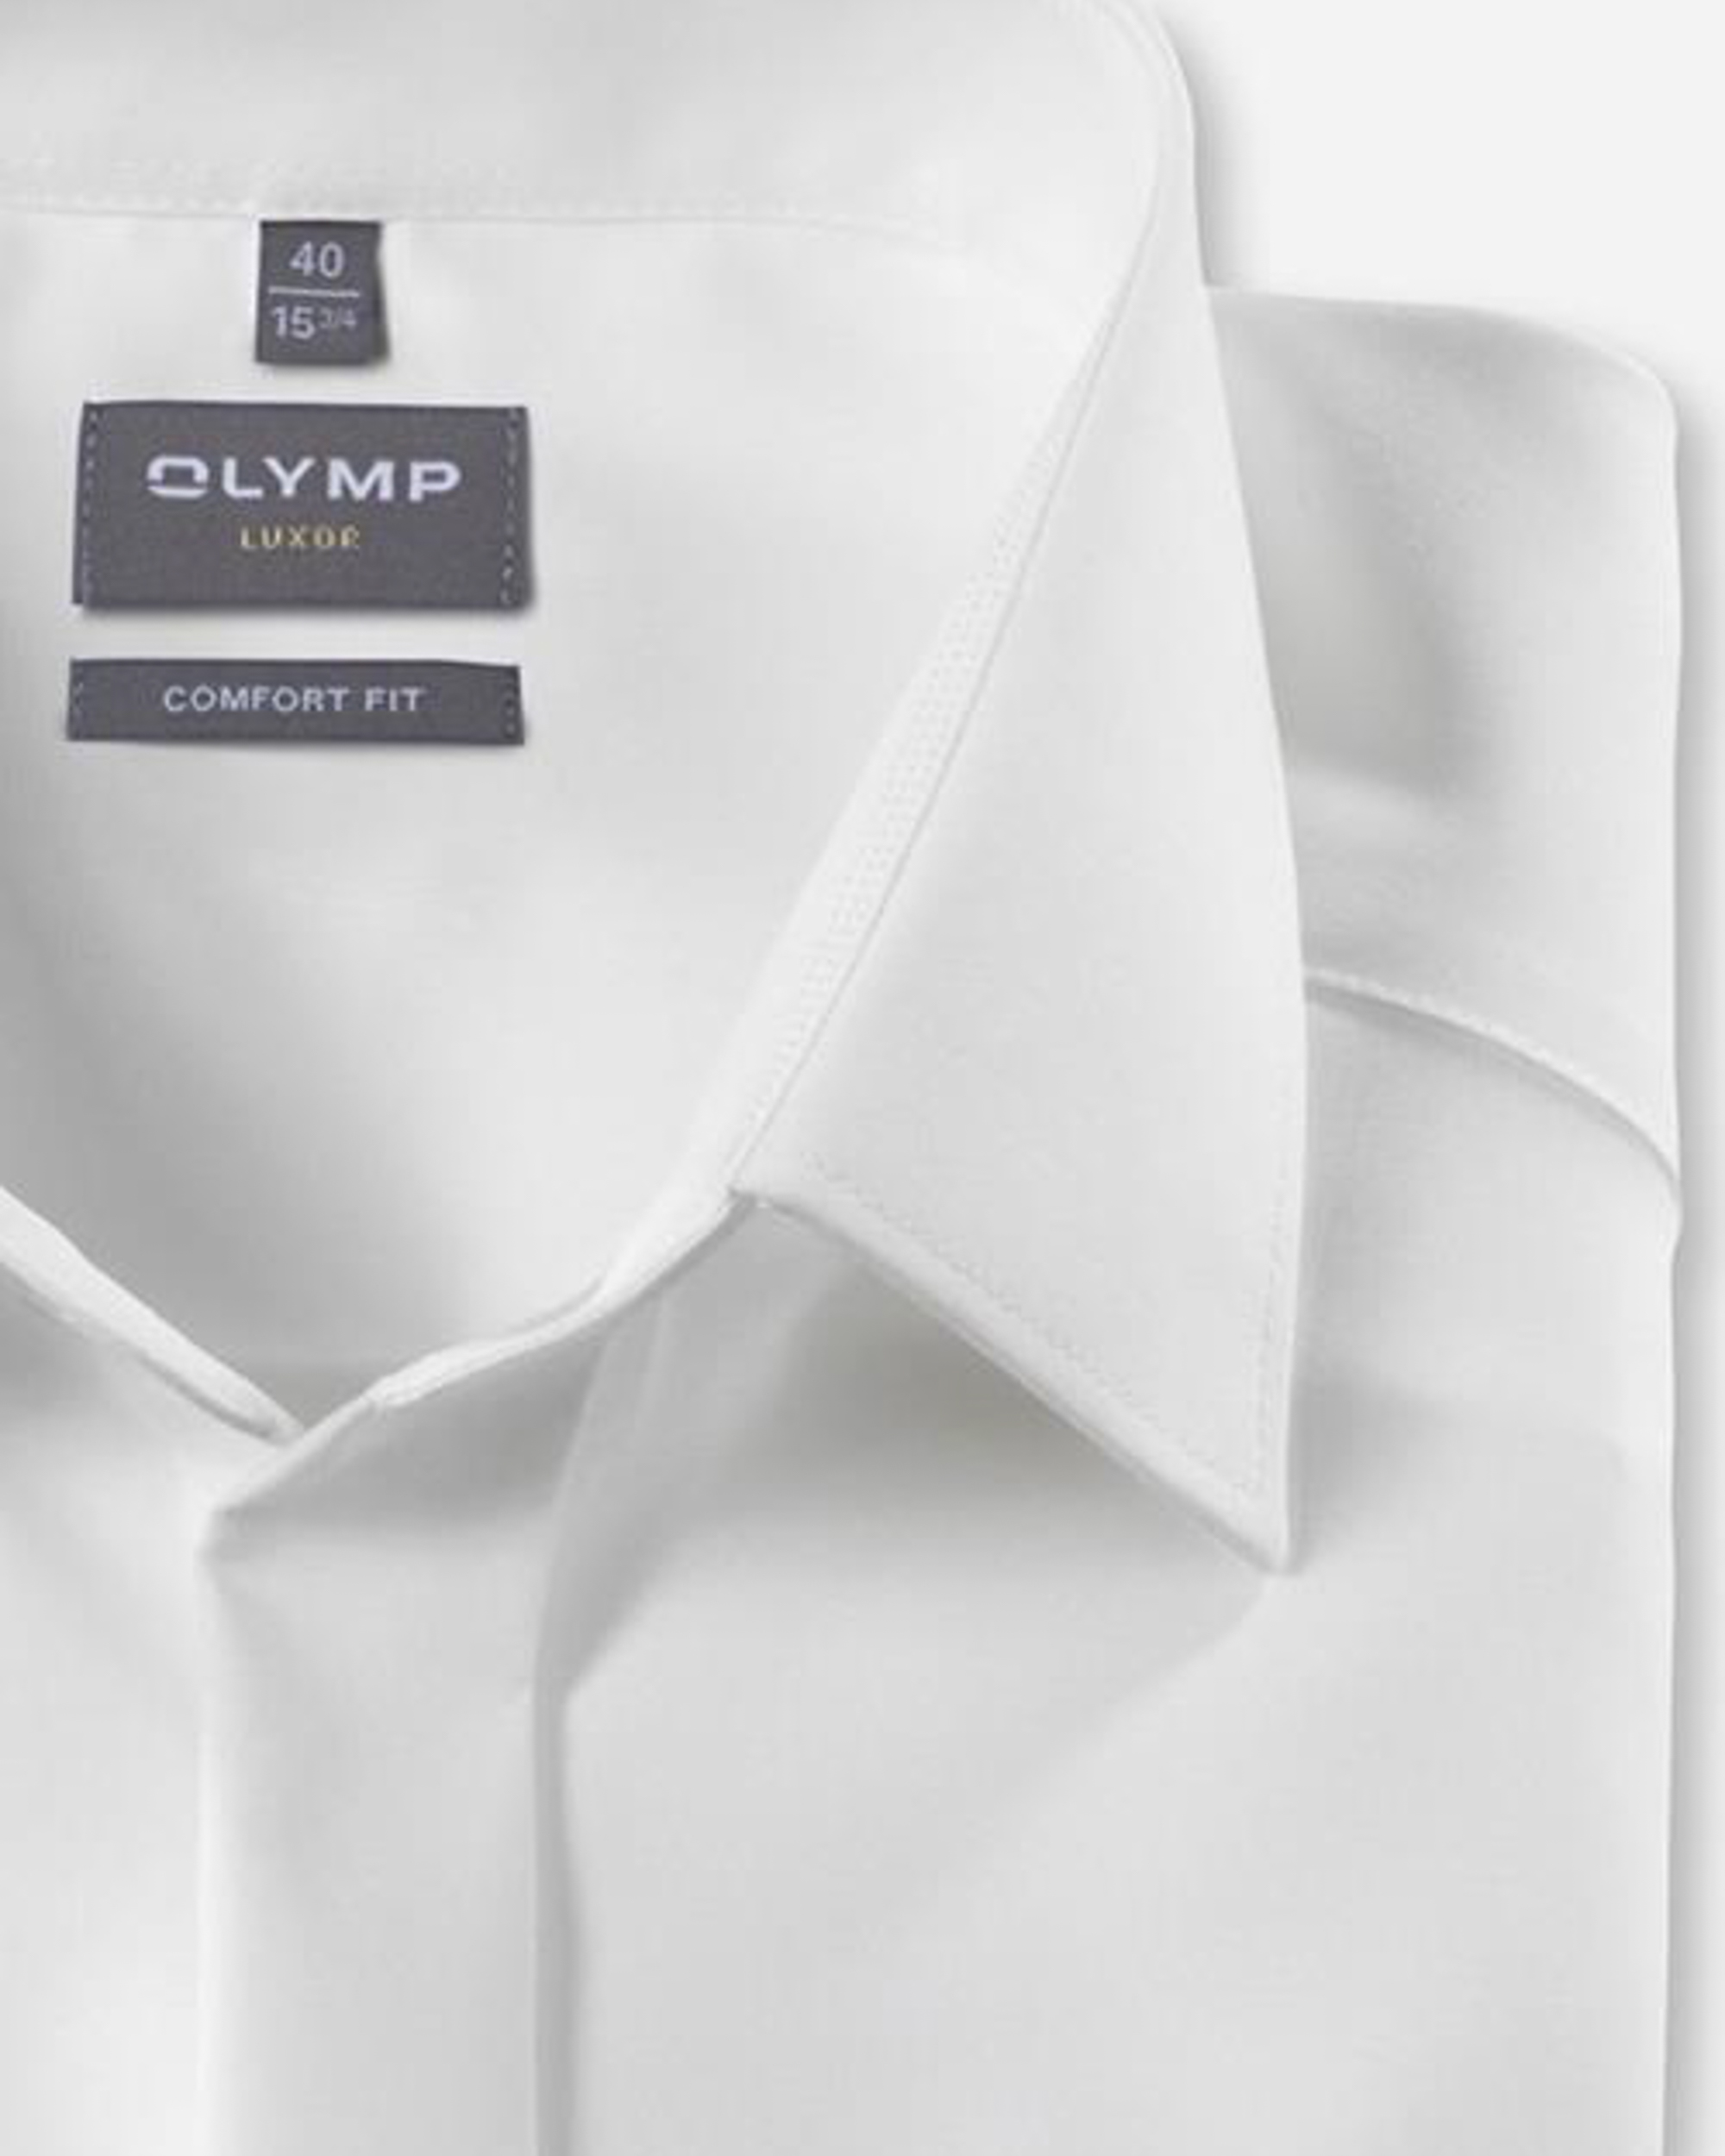 Olymp 24 7 Luxor Comfort Fit Heren Overhemd LM